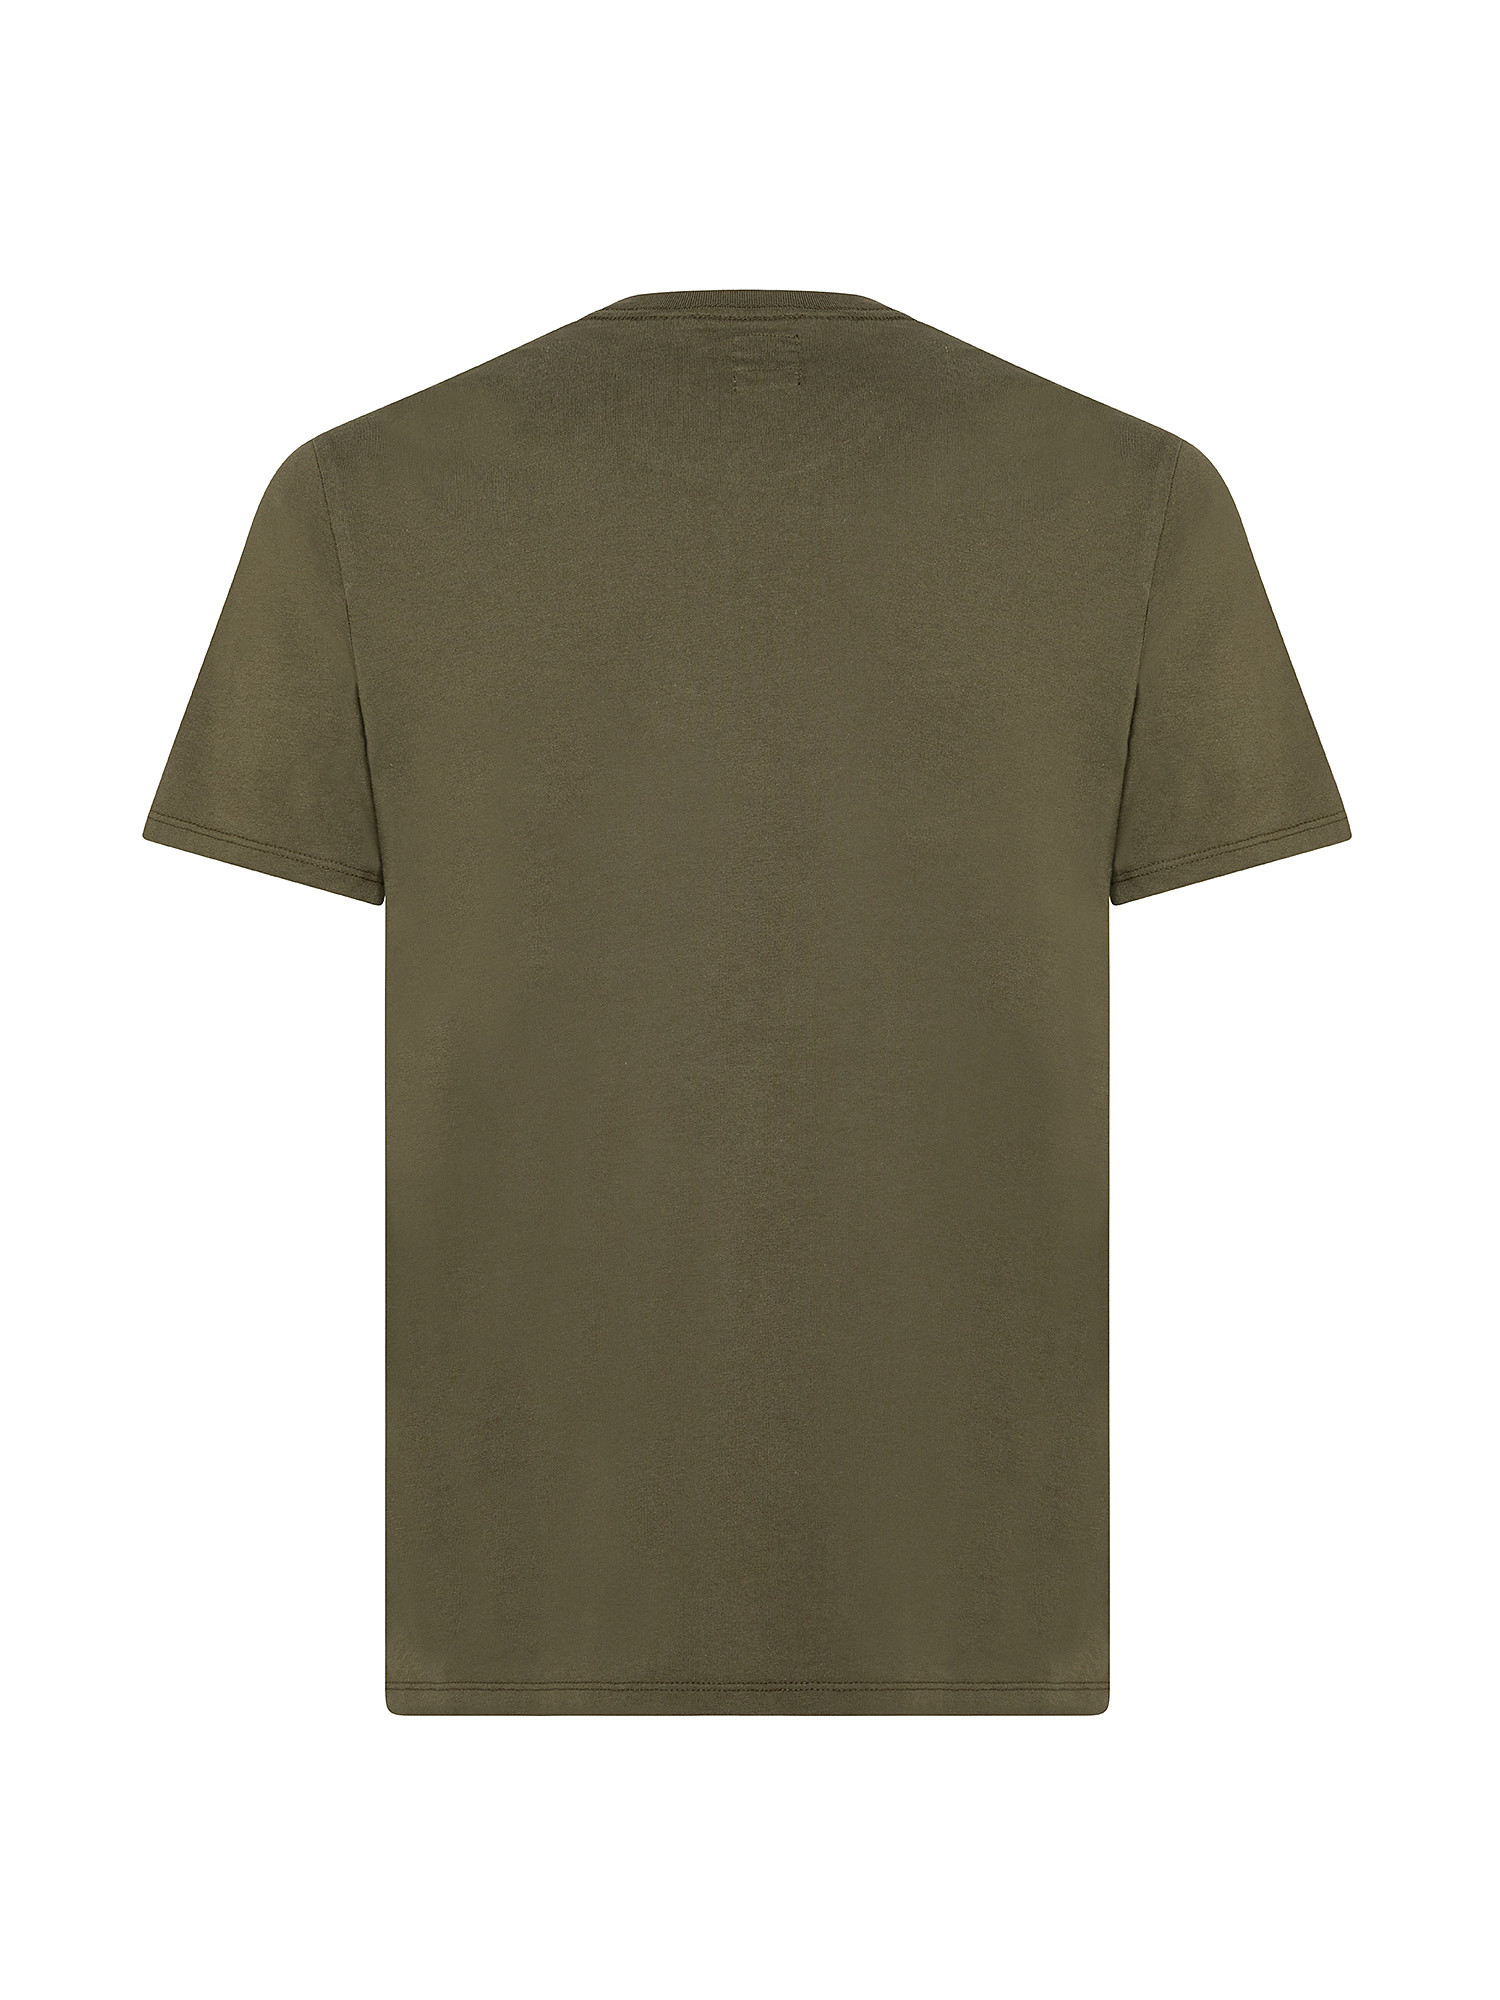 T-shirt Original con logo, Verde oliva, large image number 1